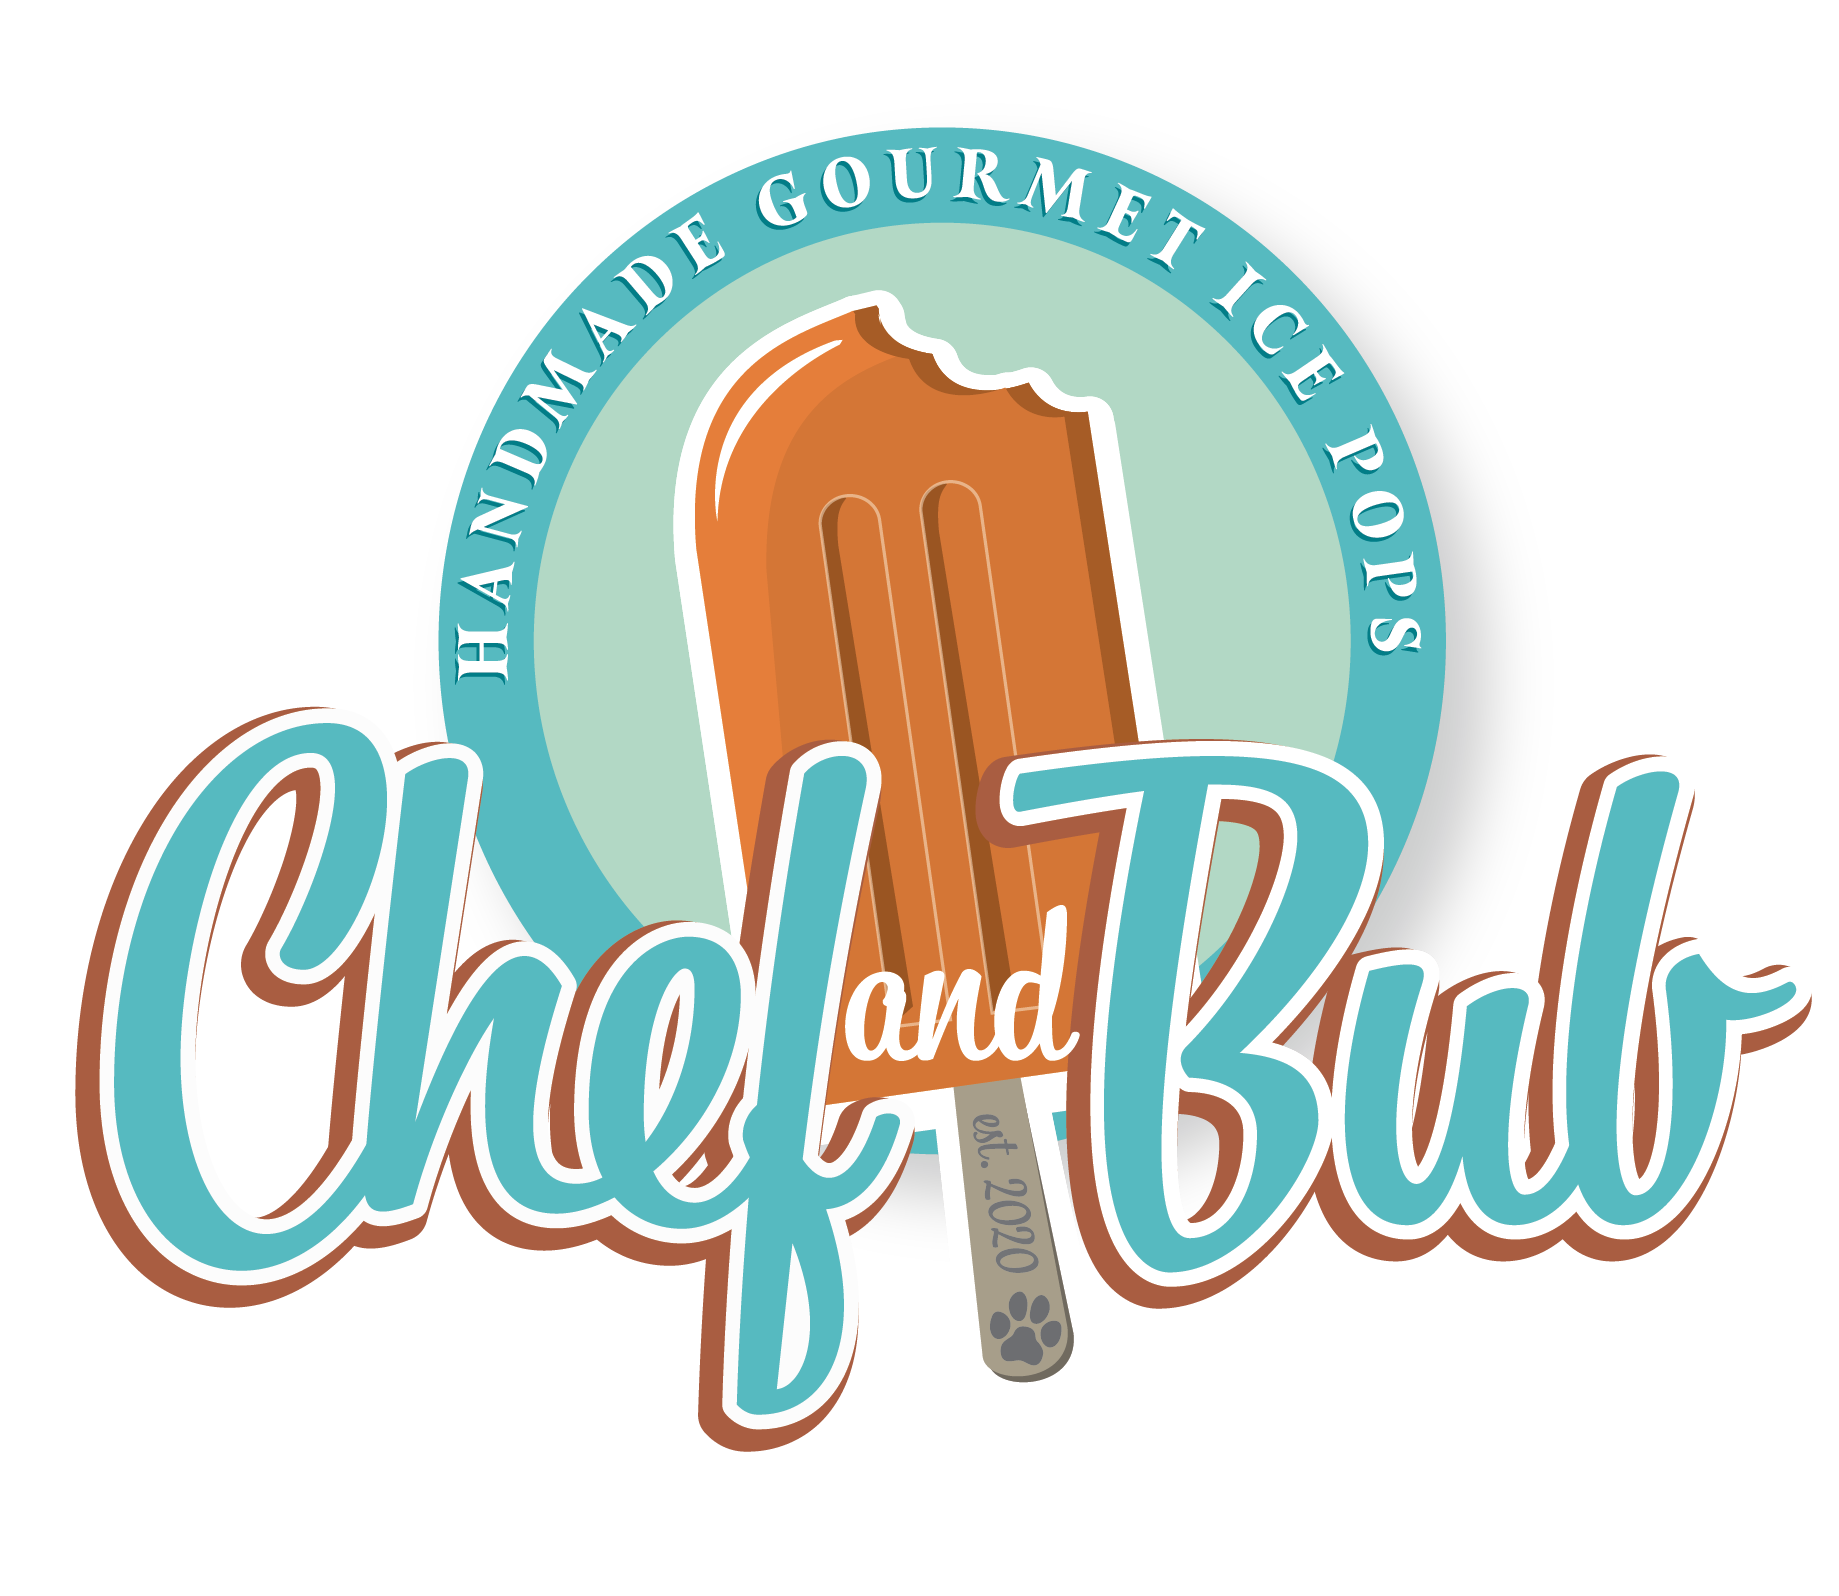 Chef & Bub